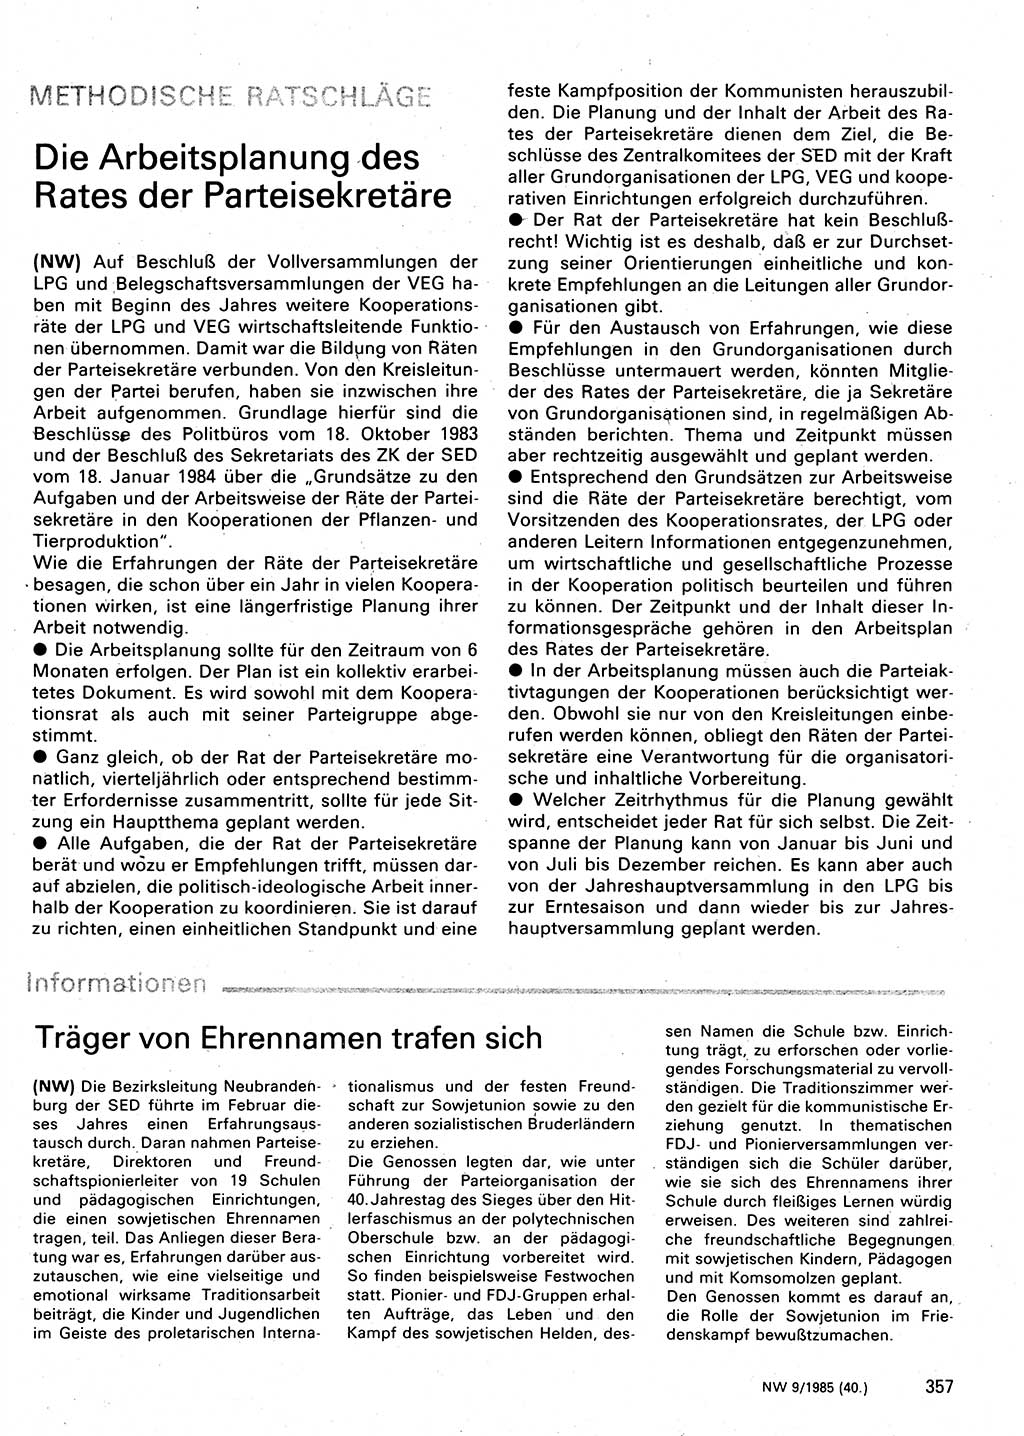 Neuer Weg (NW), Organ des Zentralkomitees (ZK) der SED (Sozialistische Einheitspartei Deutschlands) für Fragen des Parteilebens, 40. Jahrgang [Deutsche Demokratische Republik (DDR)] 1985, Seite 357 (NW ZK SED DDR 1985, S. 357)